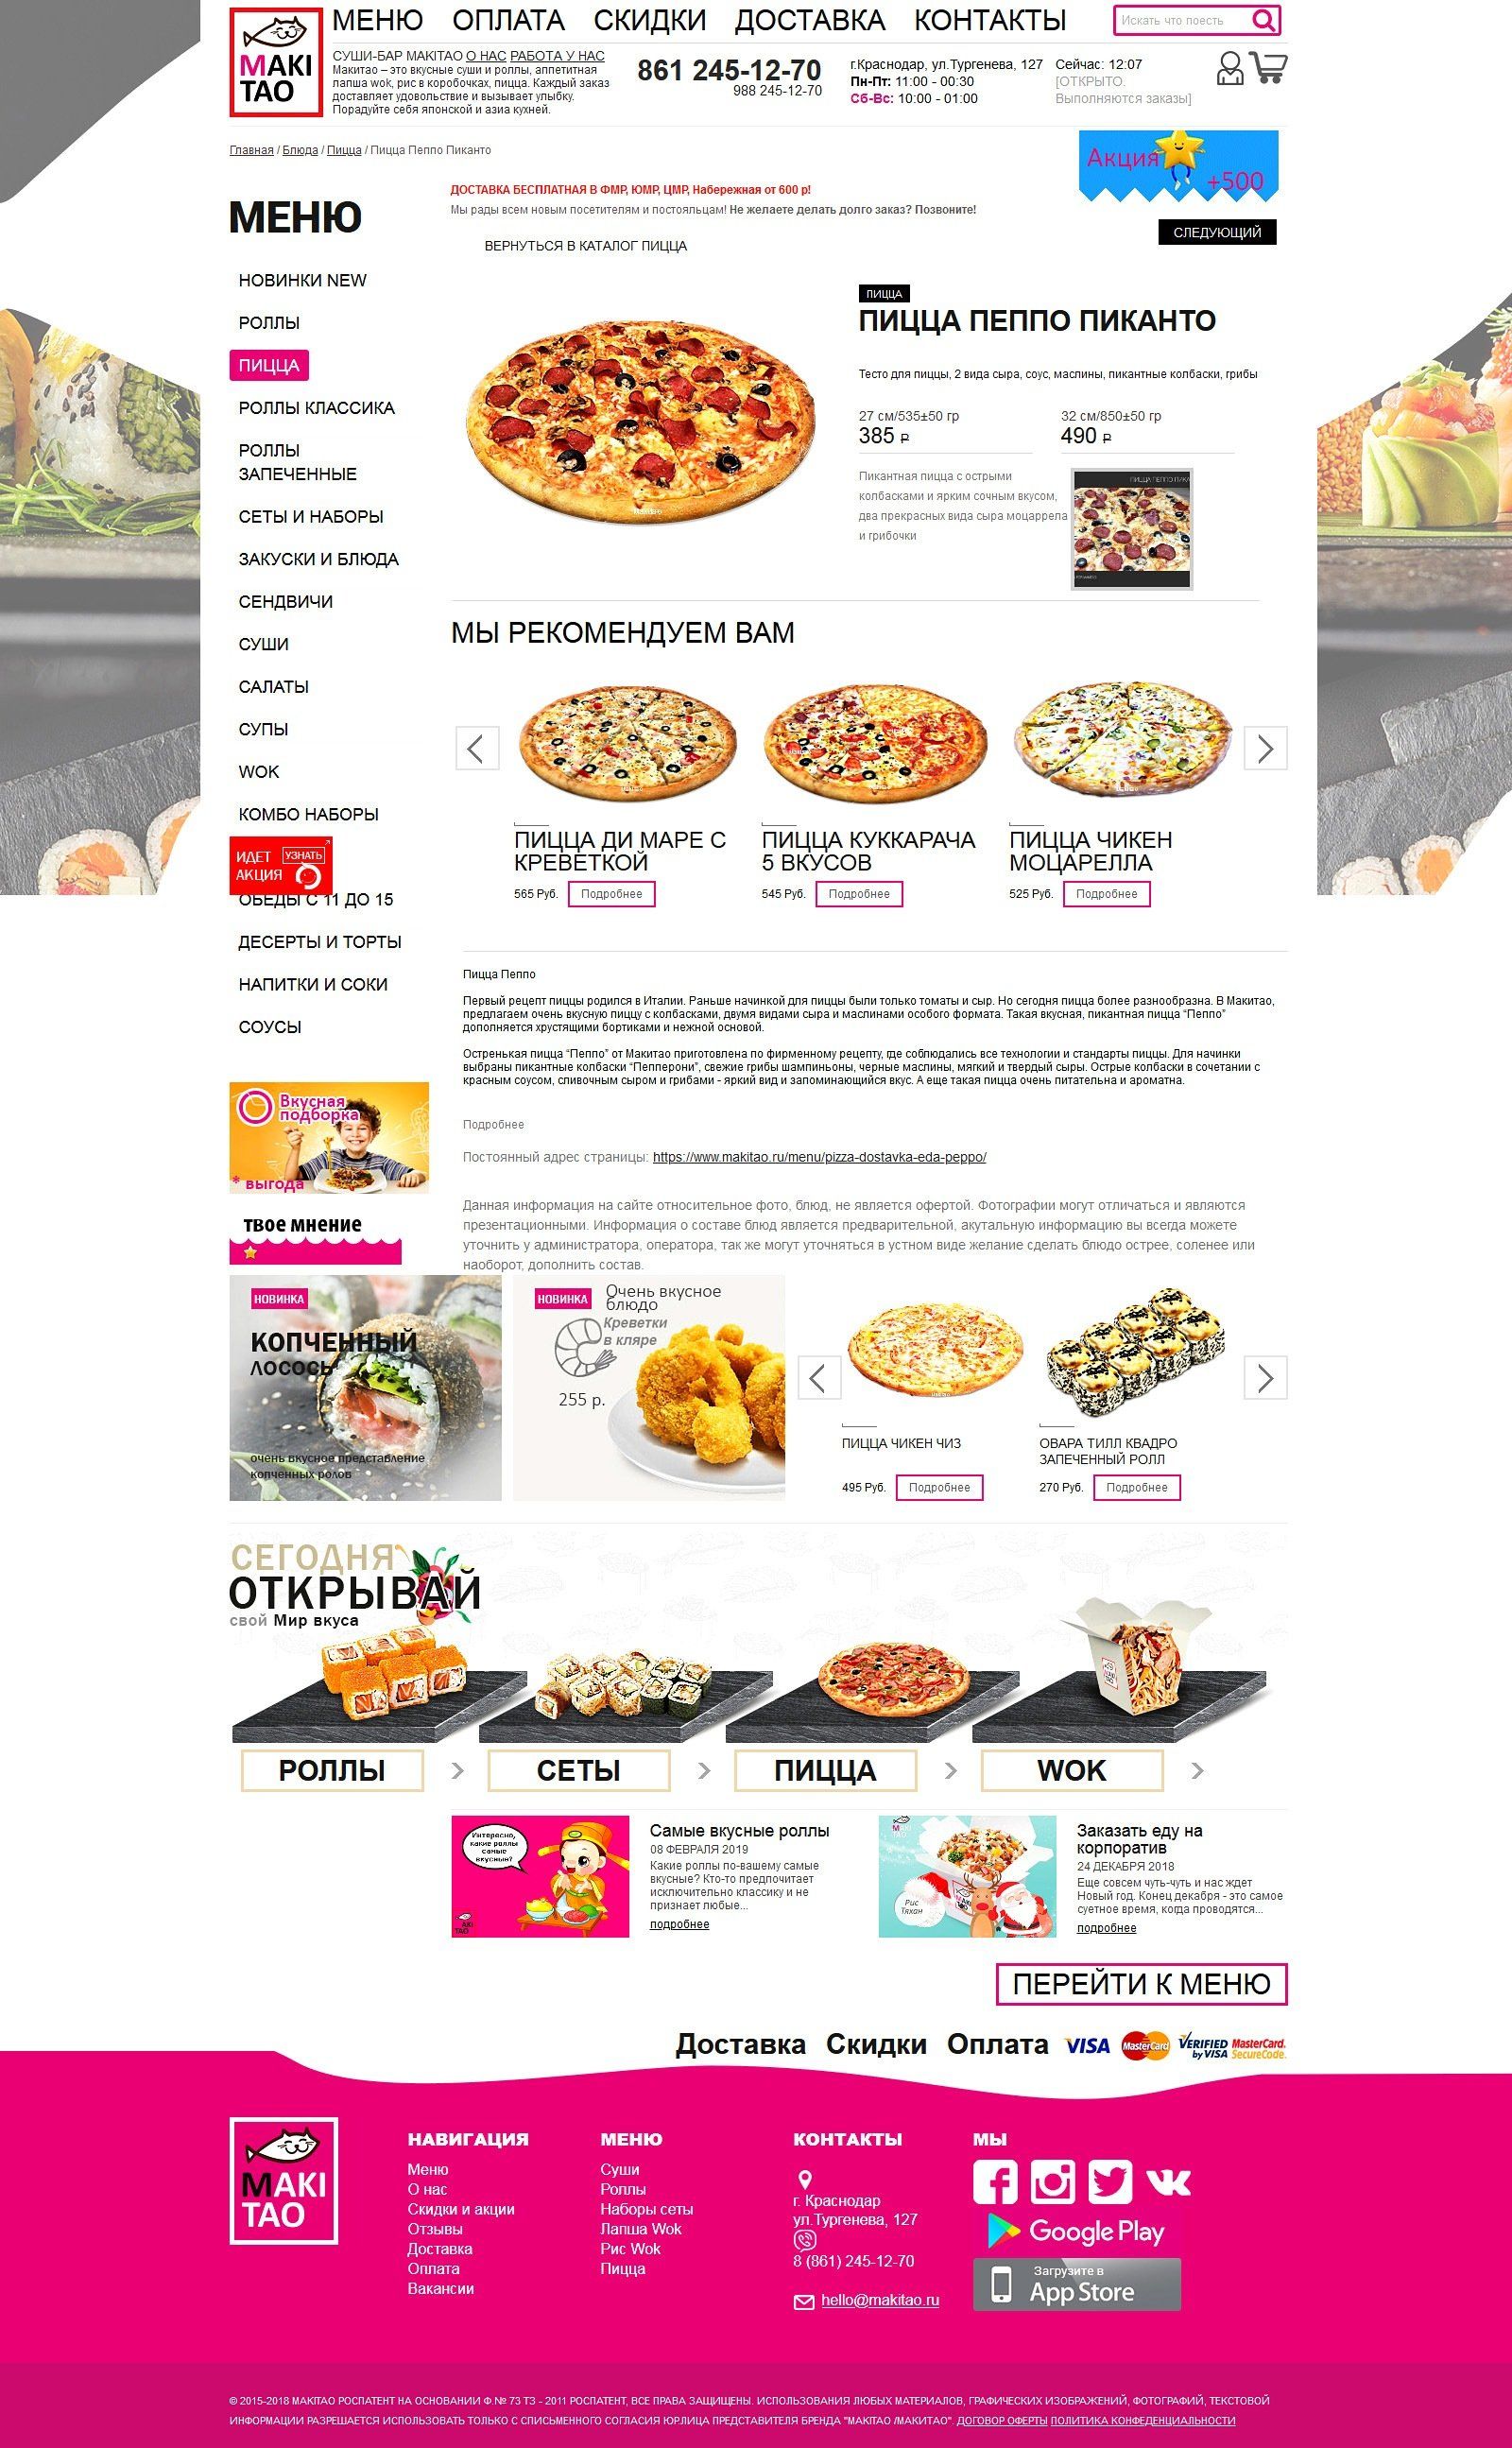 Разработка дизайна сайт доставки пиццы суши, заказать сайта доставки еды под ключ